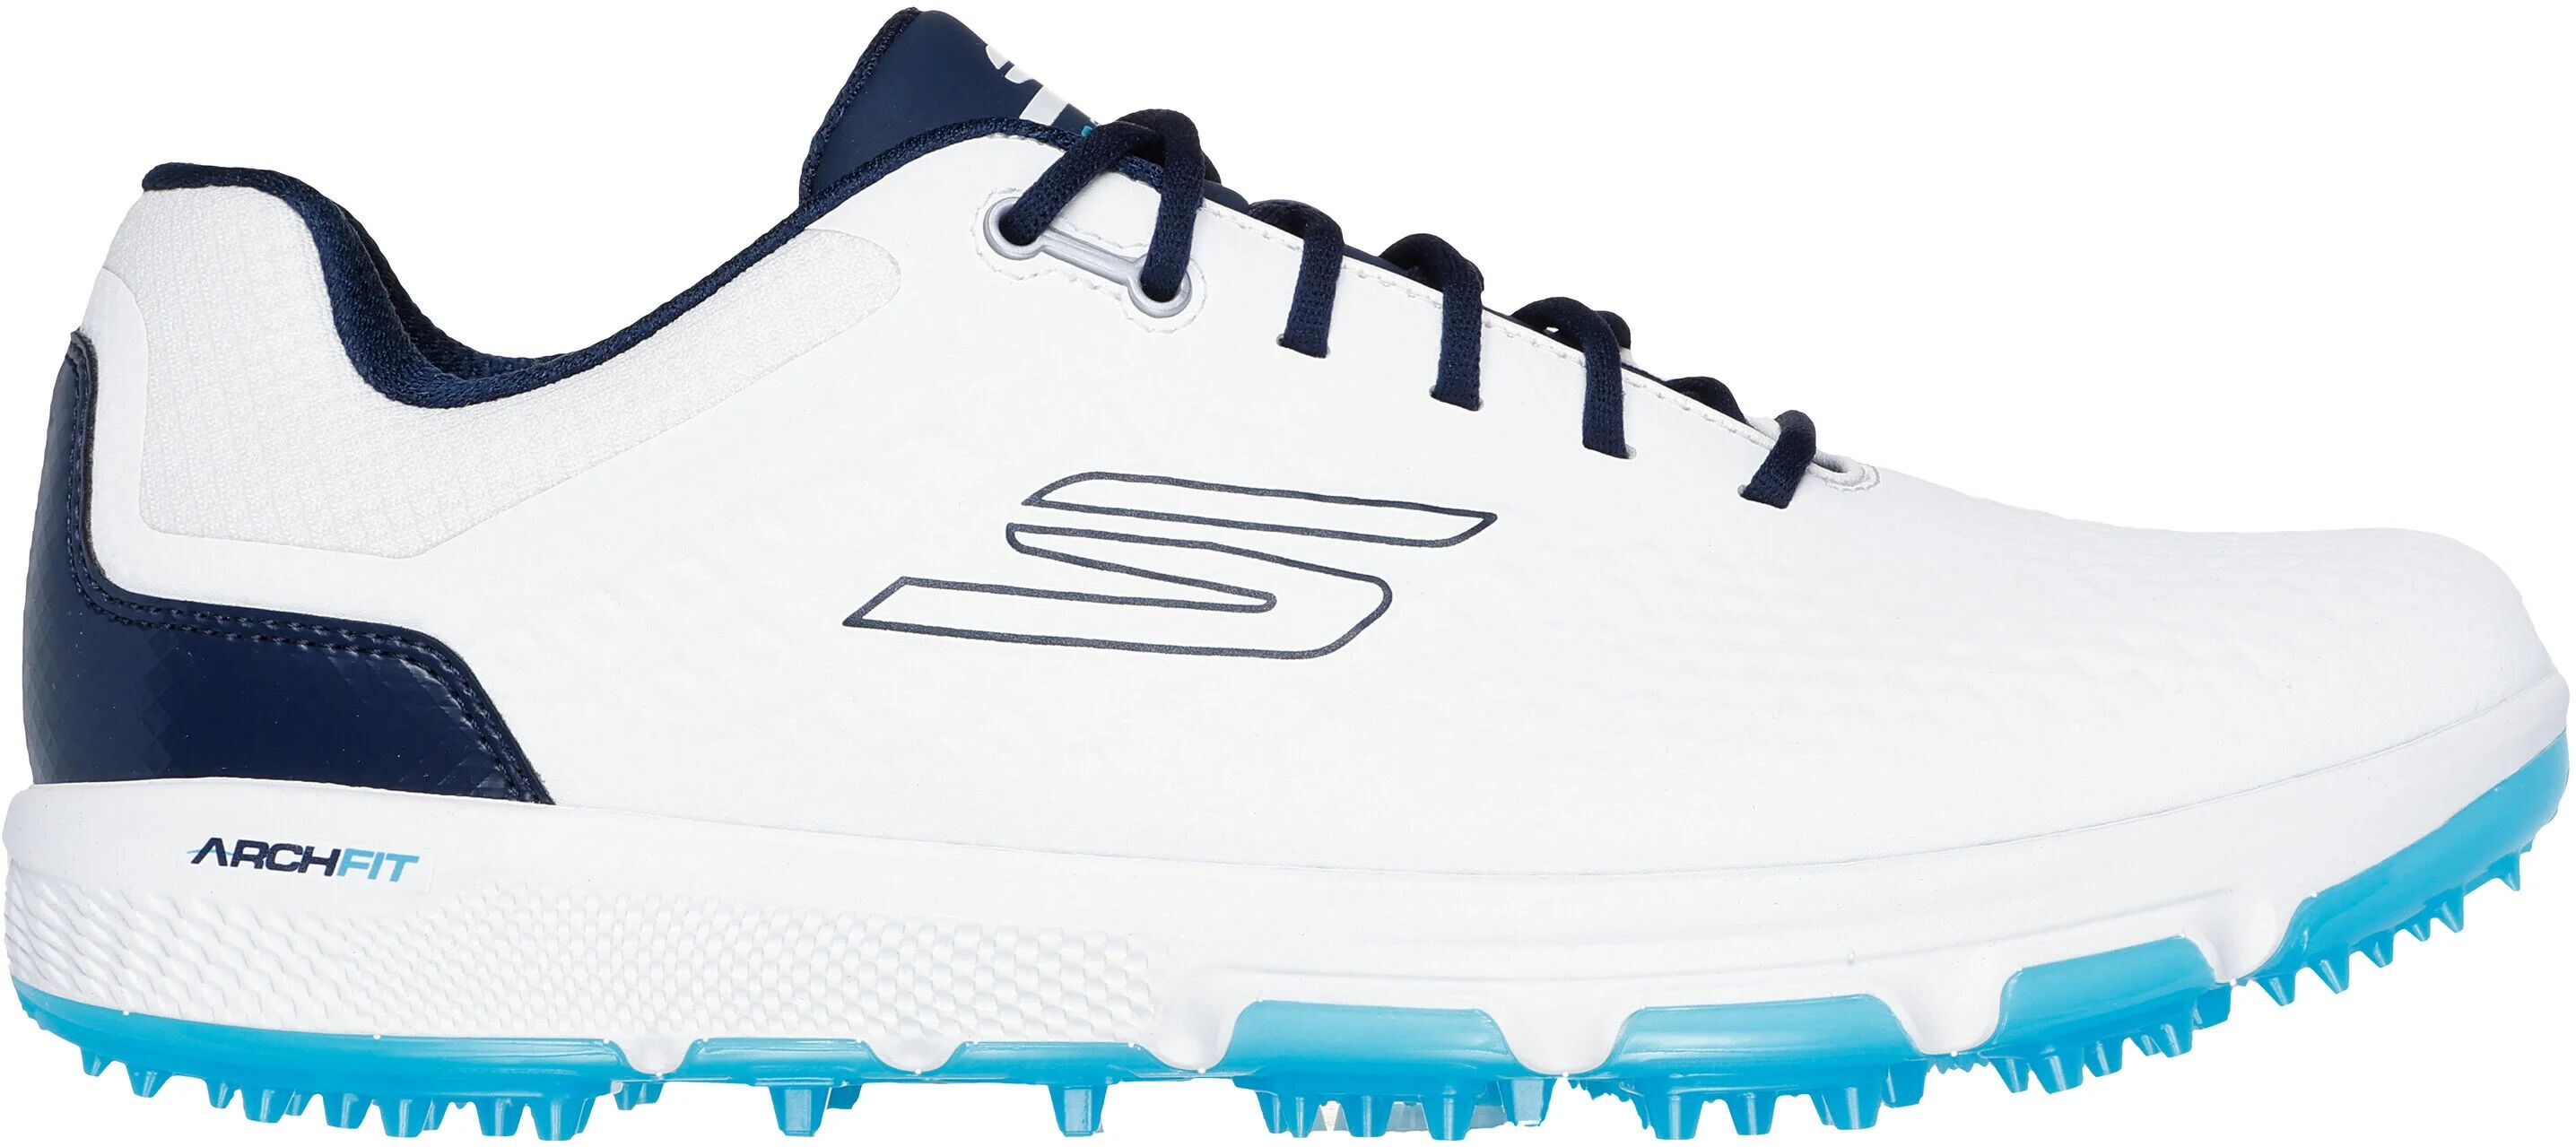 Skechers GO GOLF PRO 6 SL Golf Shoes - White/Navy - 11.5 - MEDIUM